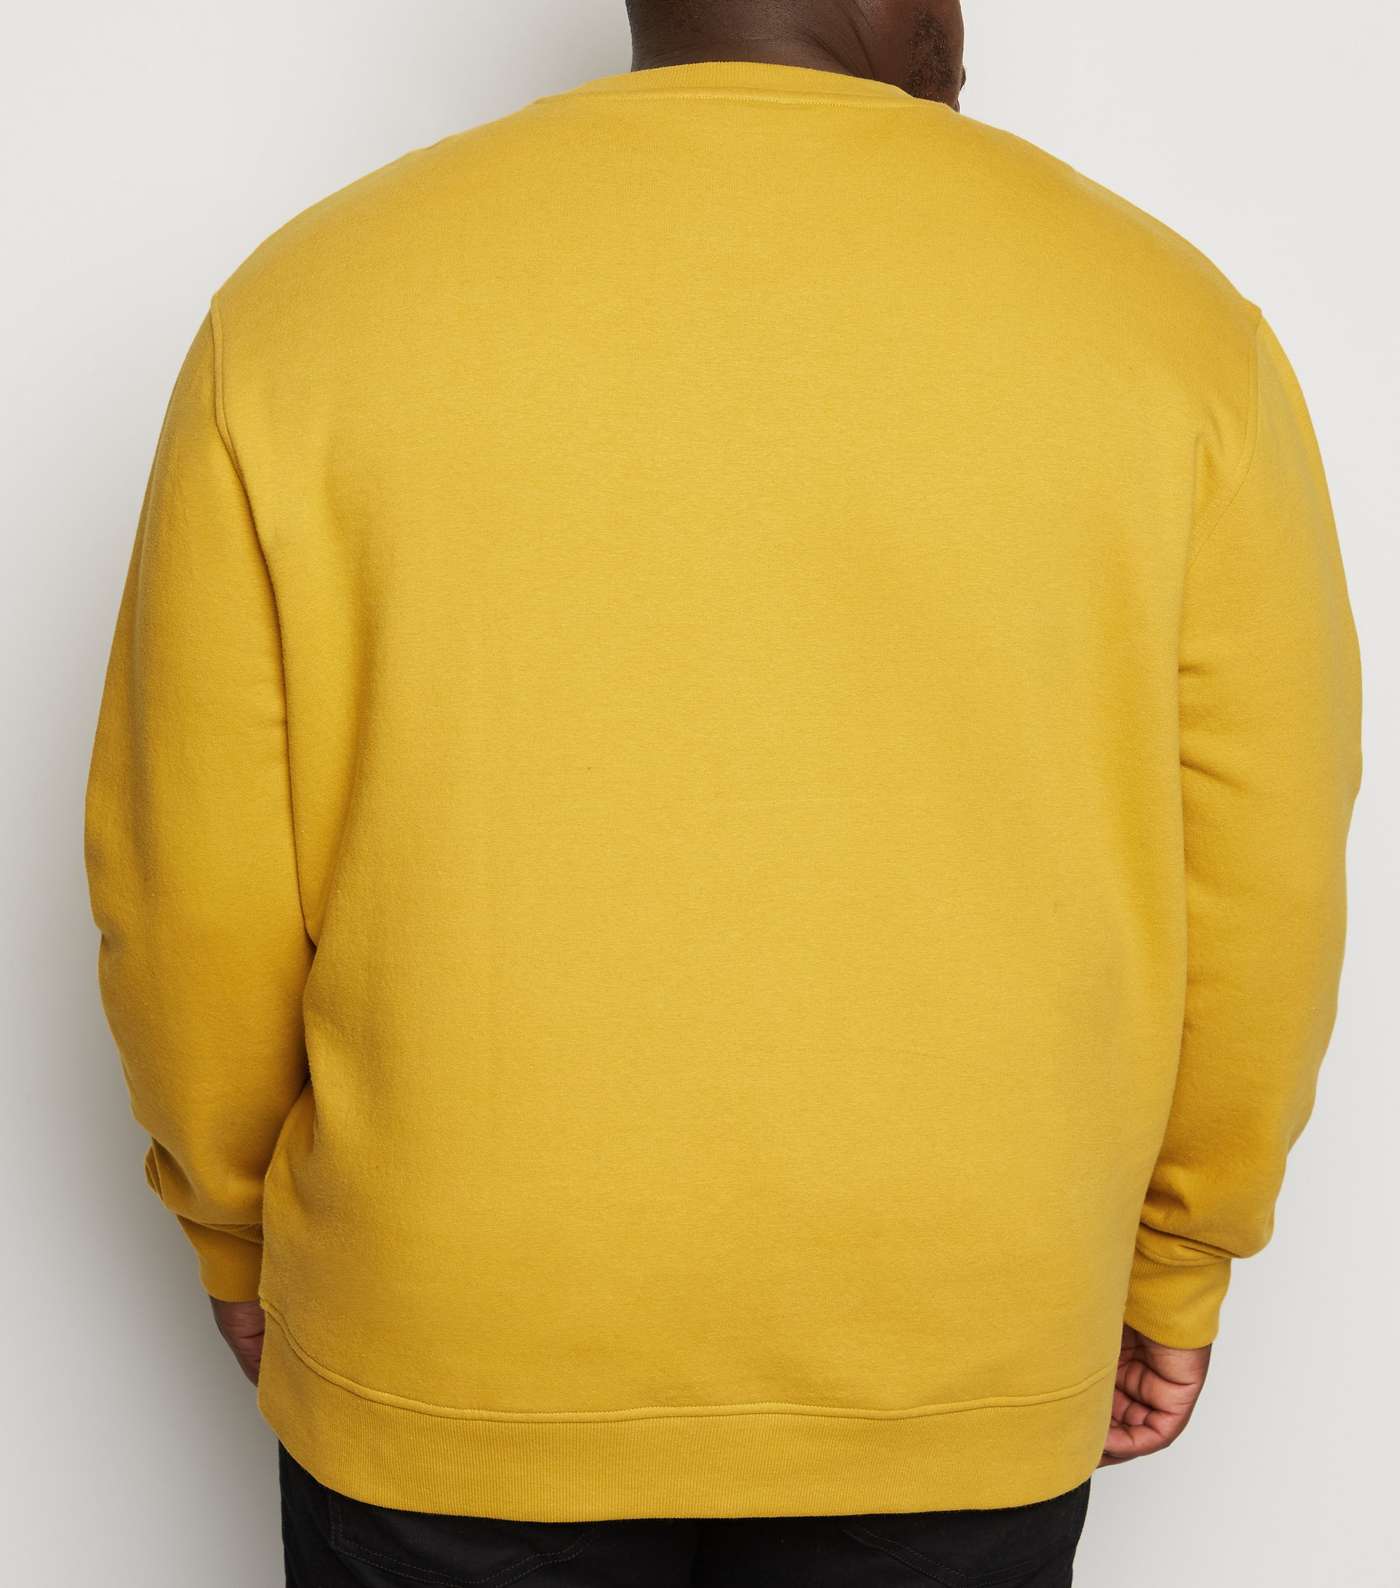 Plus Size Yellow Long Sleeve Crew Sweatshirt Image 3